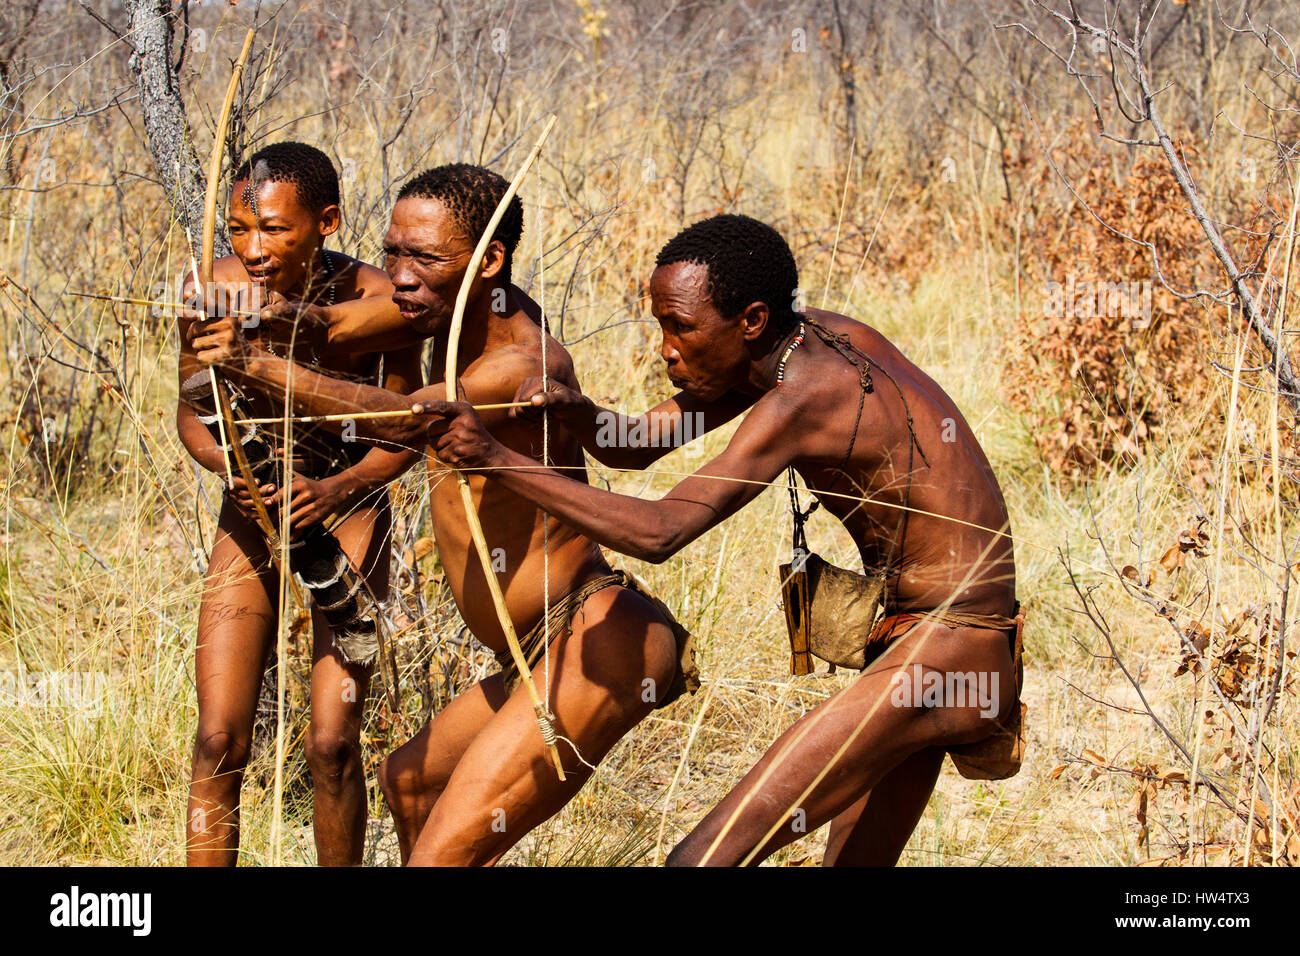 bosquimanos-personas-simulando-un-cazar-con-arco-y-flecha-a-grashoek-norte-de-namibia-hw4tx3.jpg